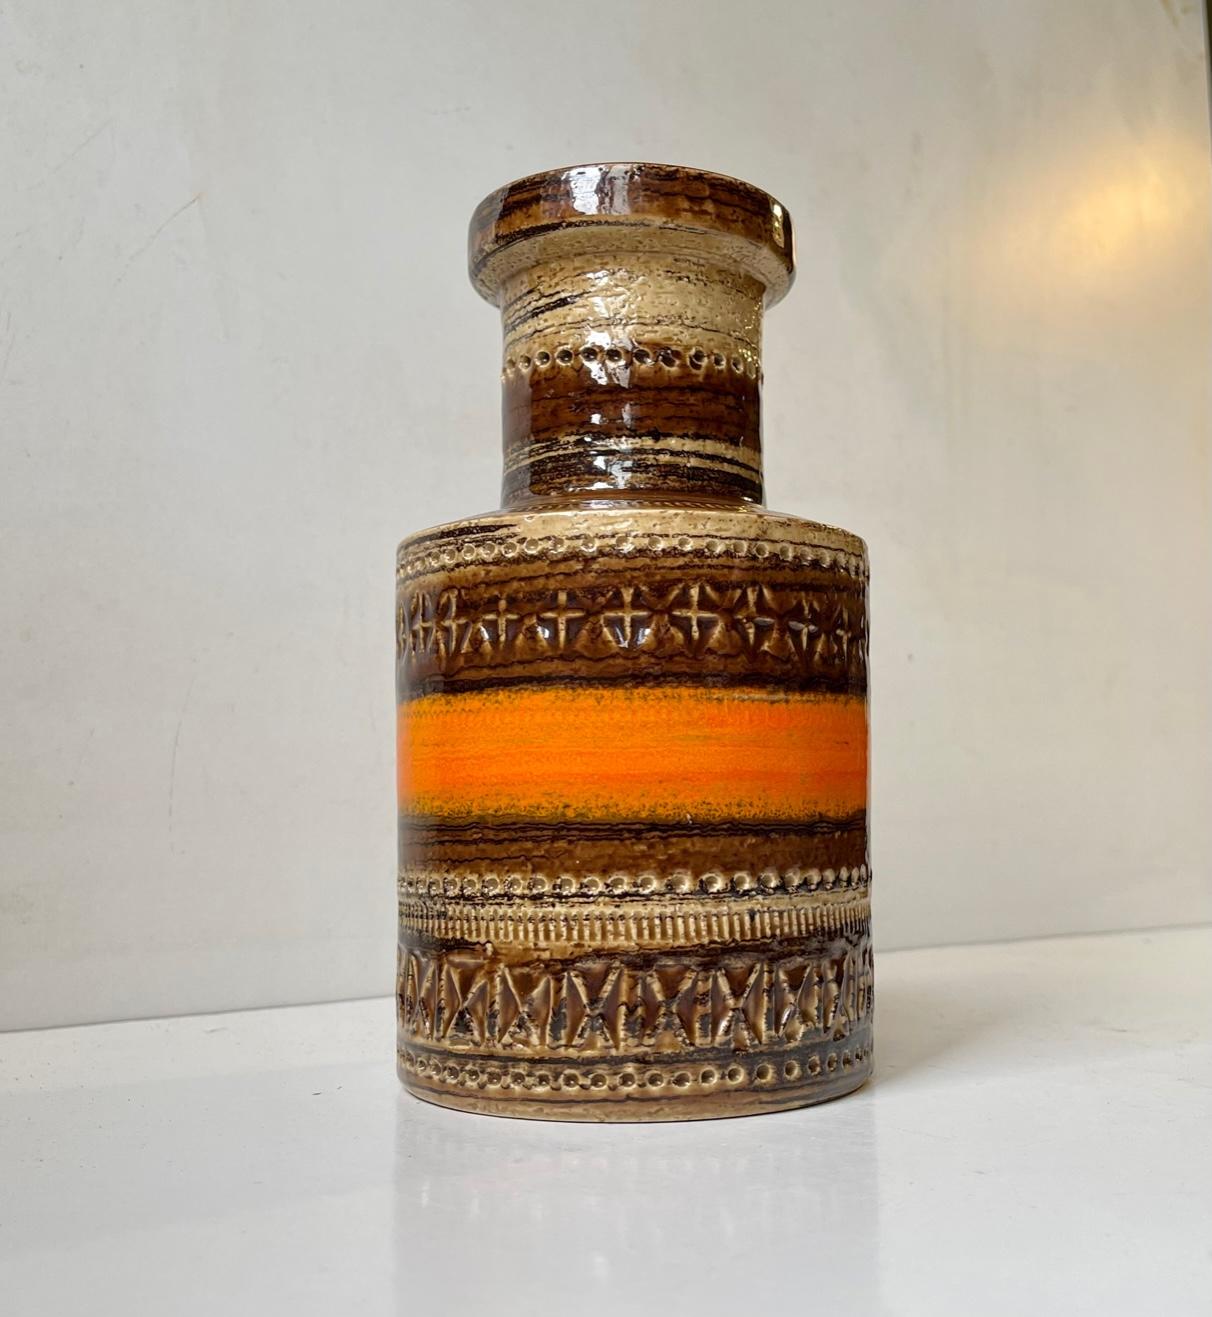 Aldo Londi a conçu ce vase en grès qui attire l'attention. Son décor distinct, appelé Sahara, est exécuté avec des glaçures terreuses, brunes et orange vif sur des motifs/symboles géométriques. Il a été fabriqué en Italie par Bitossi pour Raymor